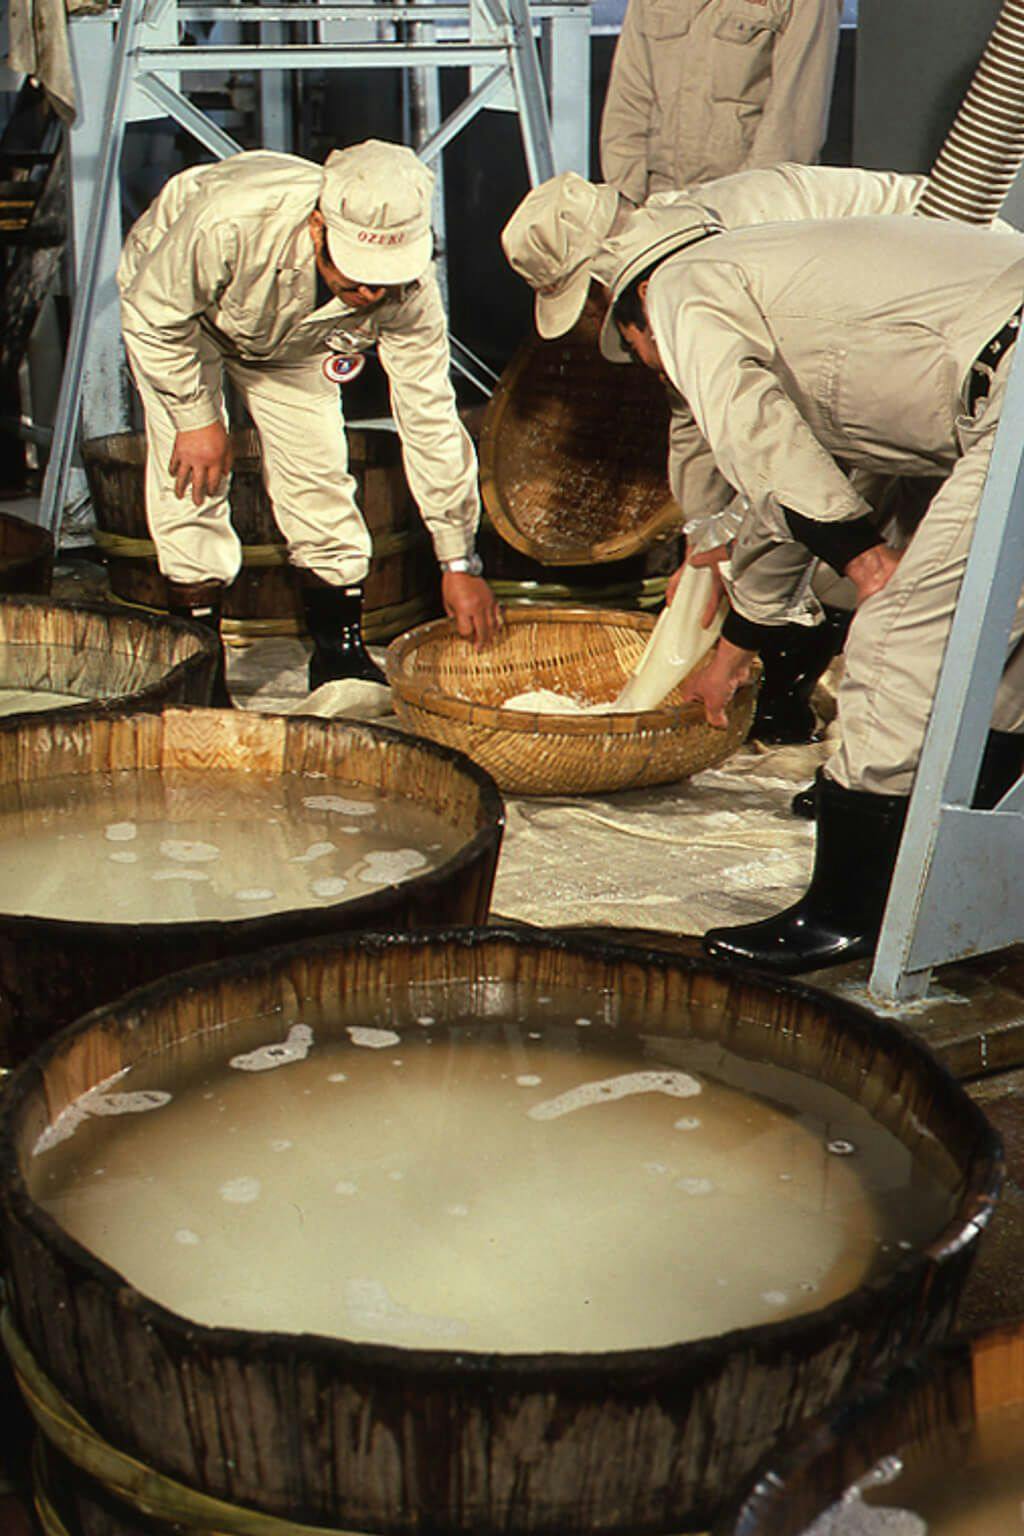 Brewery workers called “kurabito” prepare the rice for sake making.